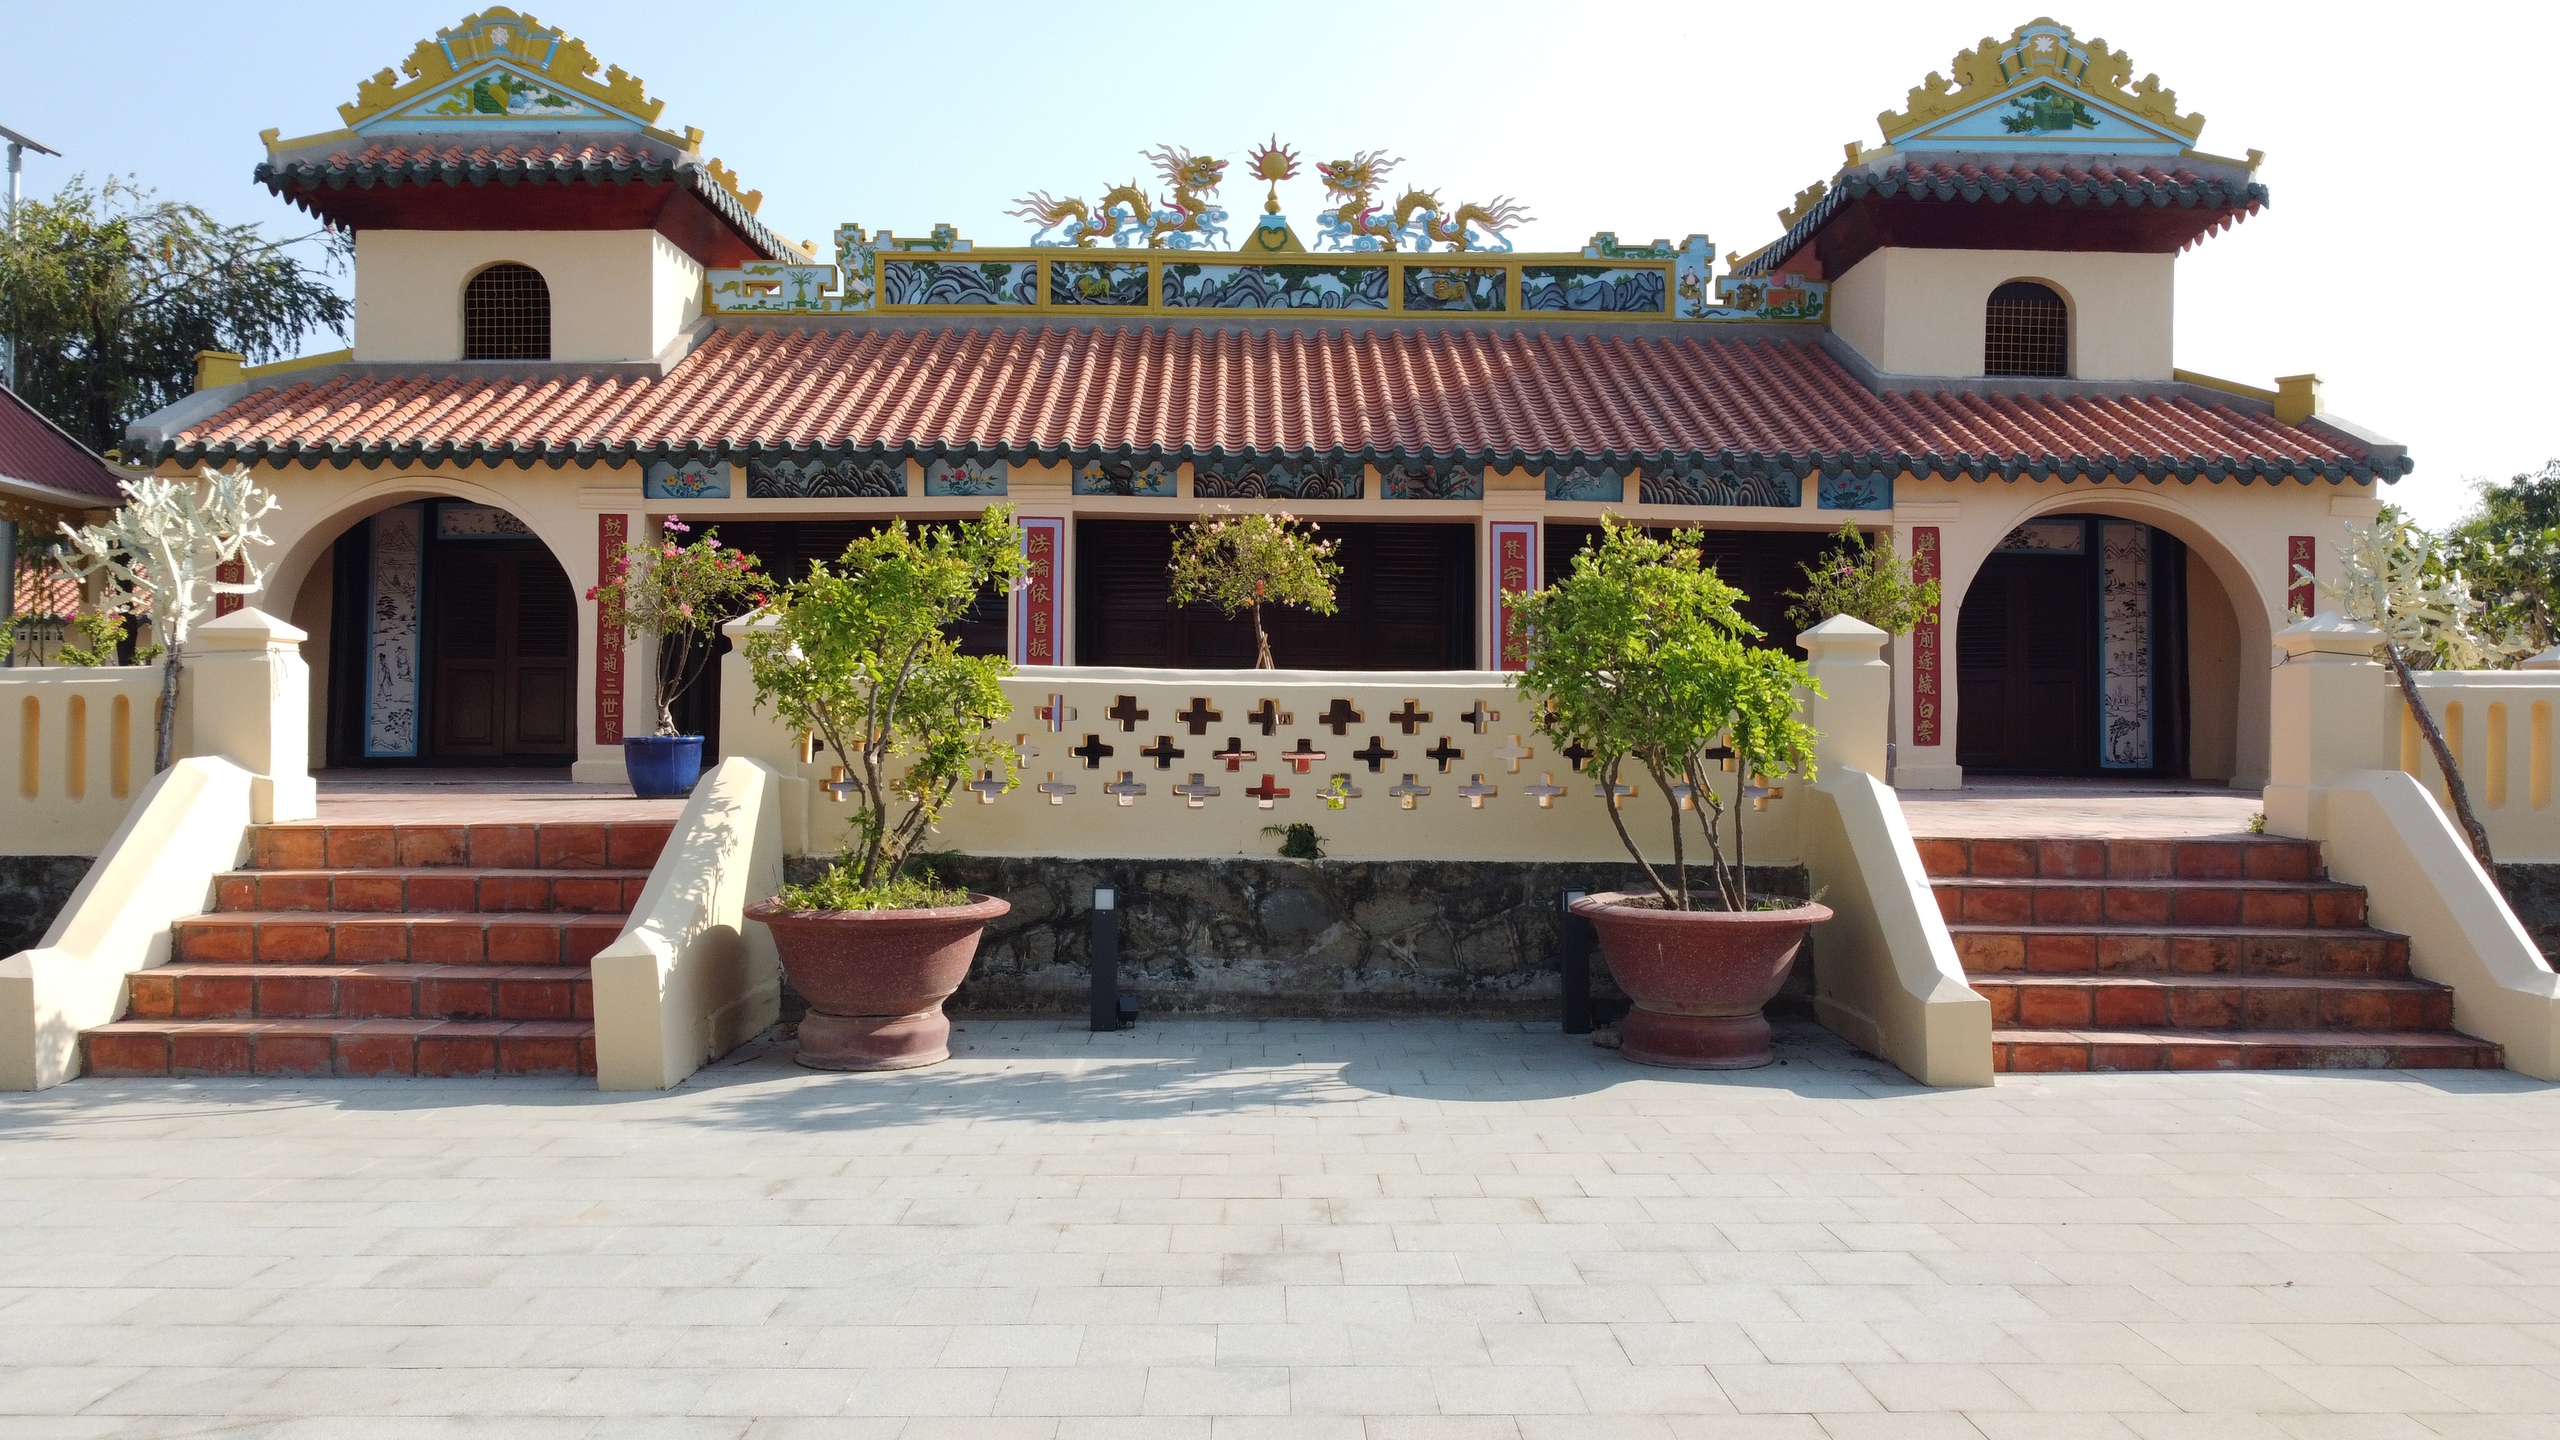 Đến lễ hội Dinh Cô, nhớ tham quan chùa Long Bàn, ghé Tổ đình Thiên Thai